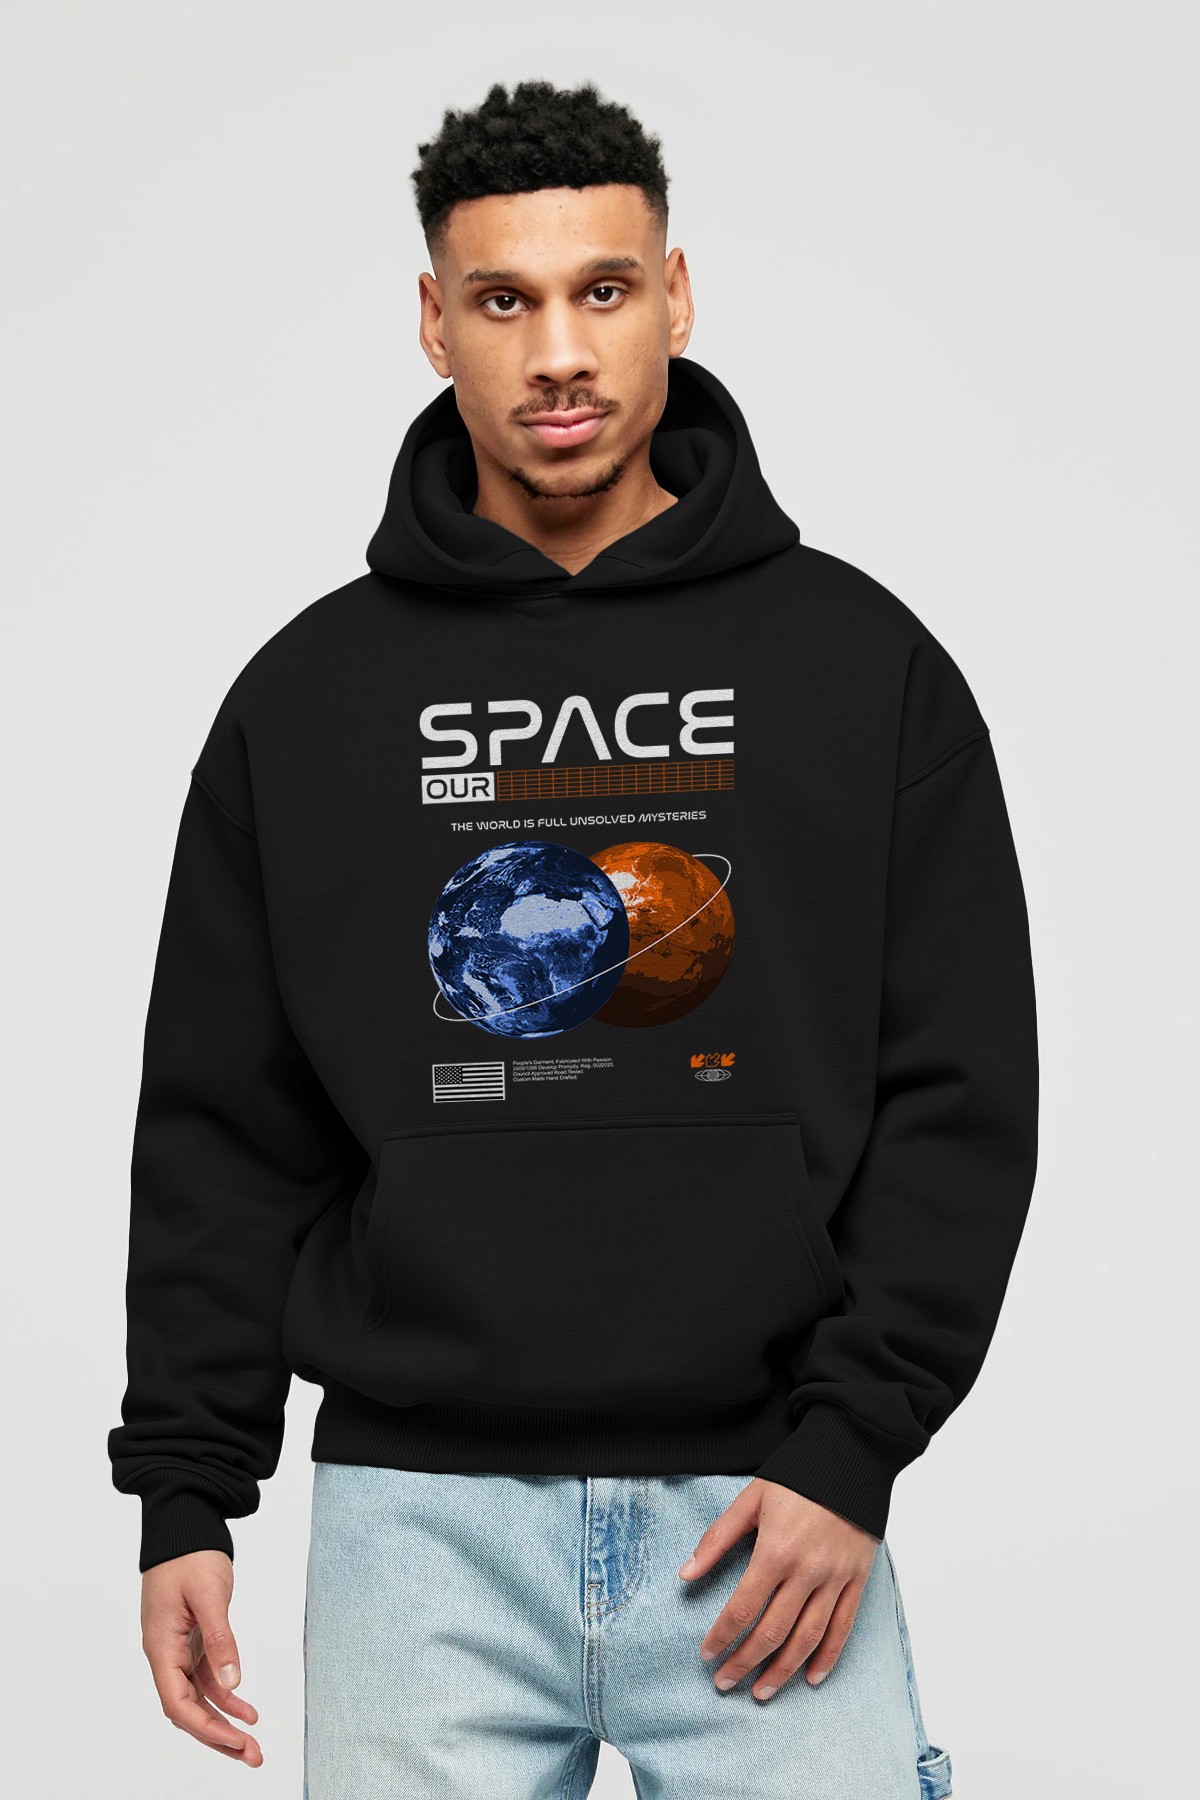 Space Our Ön Baskılı Hoodie Oversize Kapüşonlu Sweatshirt Erkek Kadın Unisex